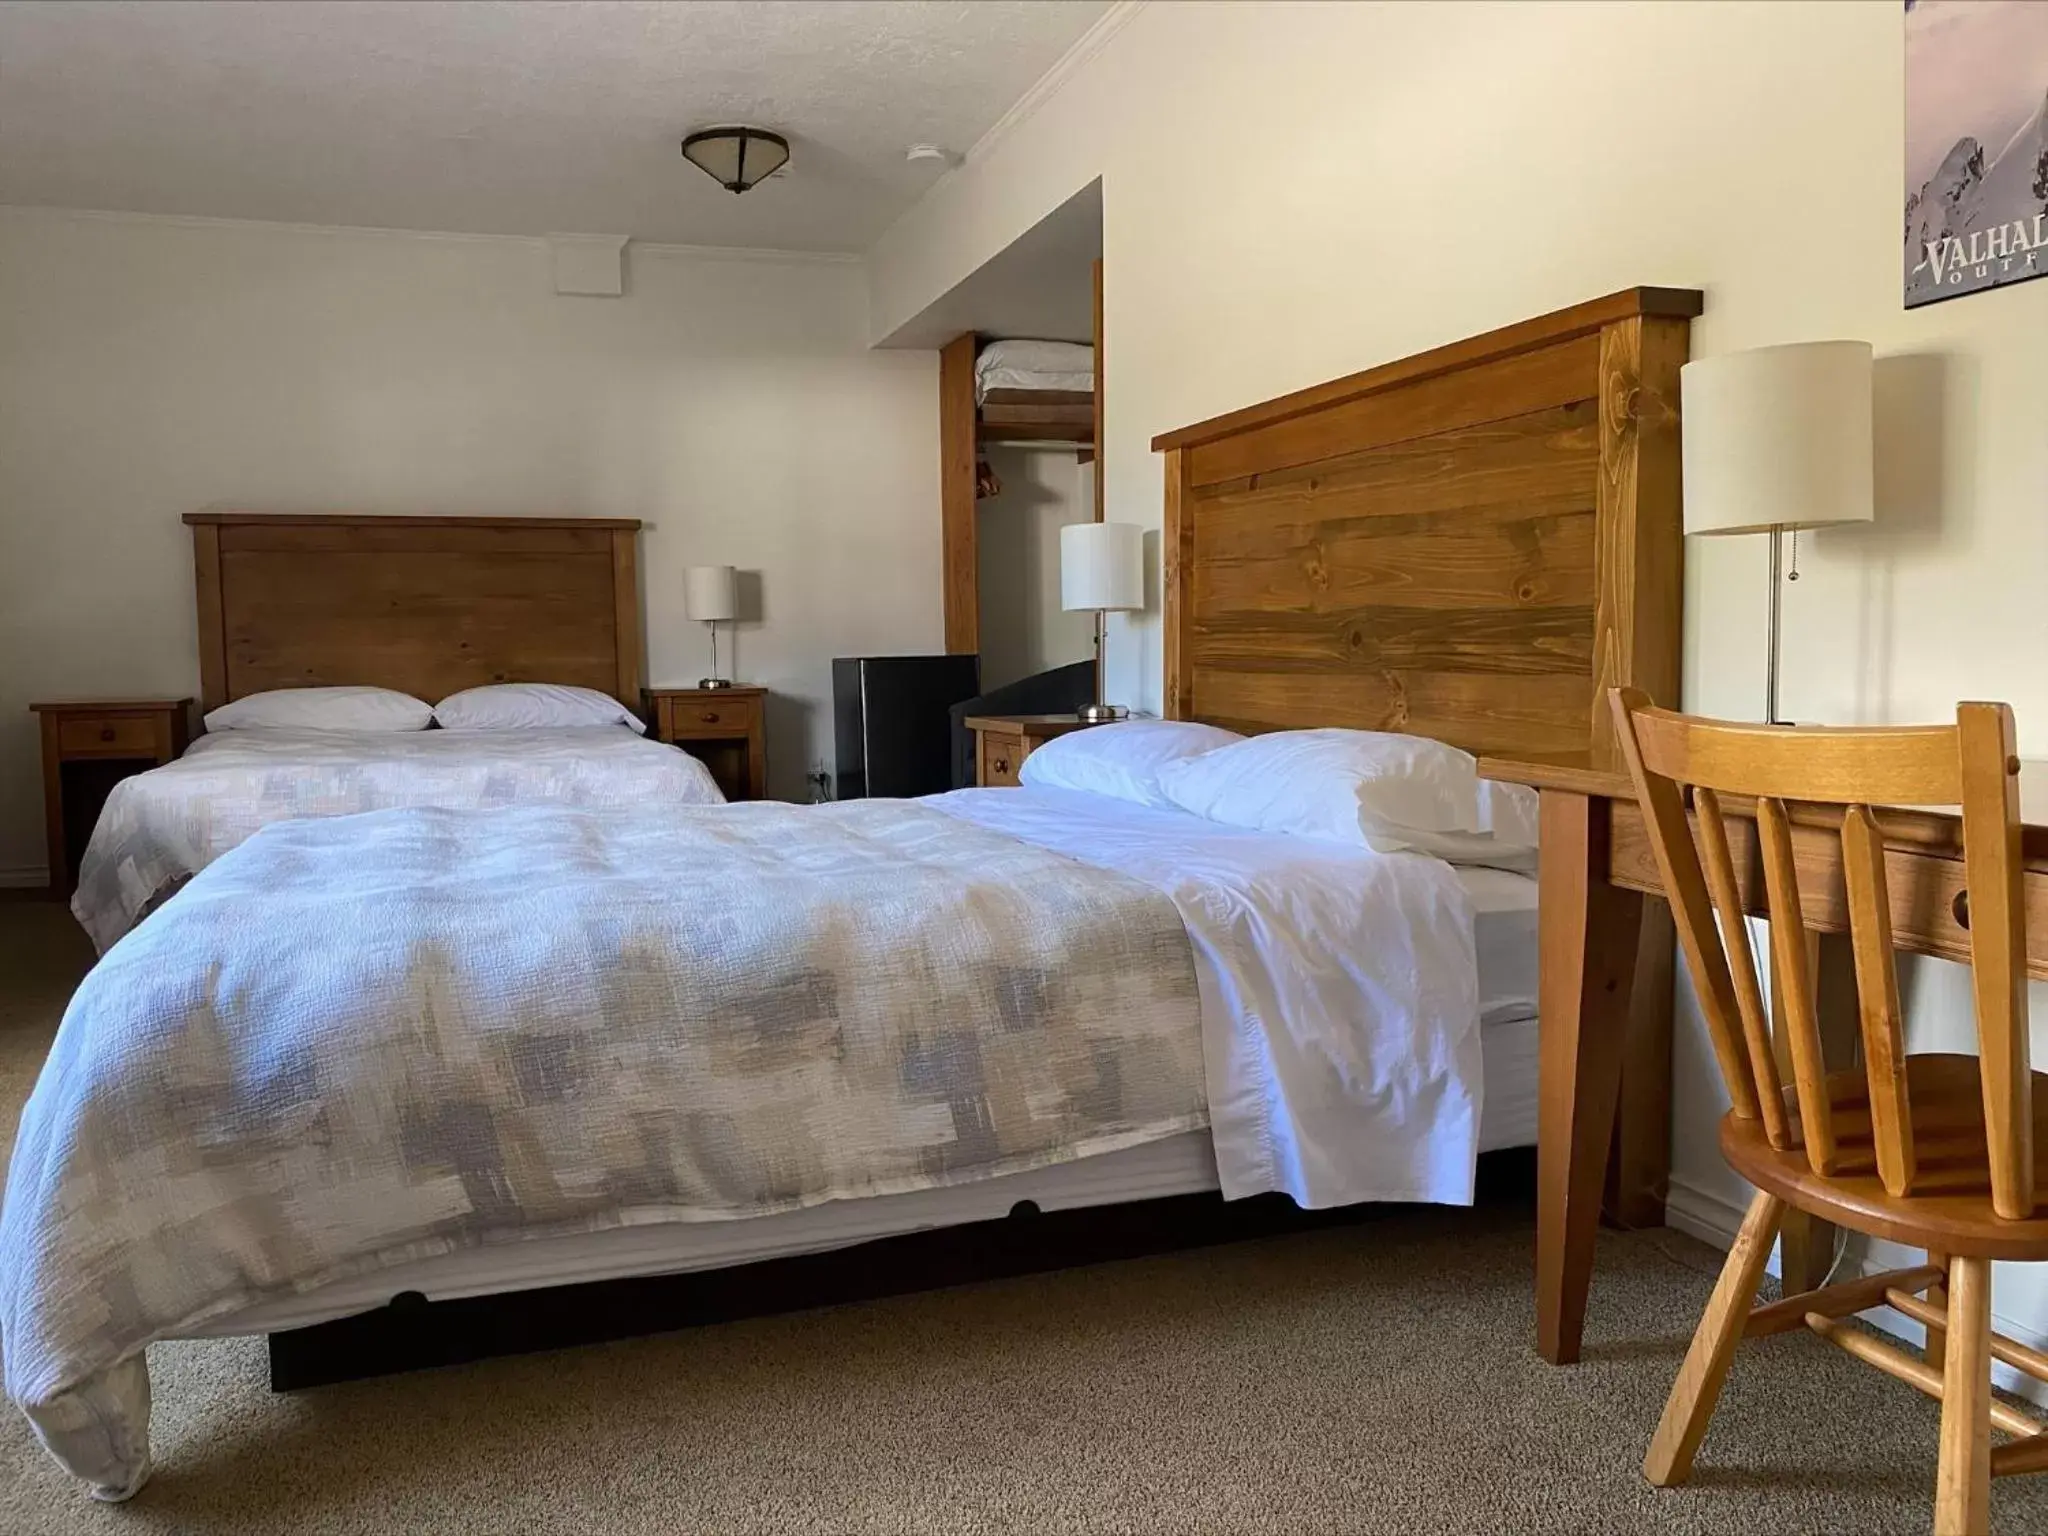 Bedroom, Bed in Stork Nest Inn